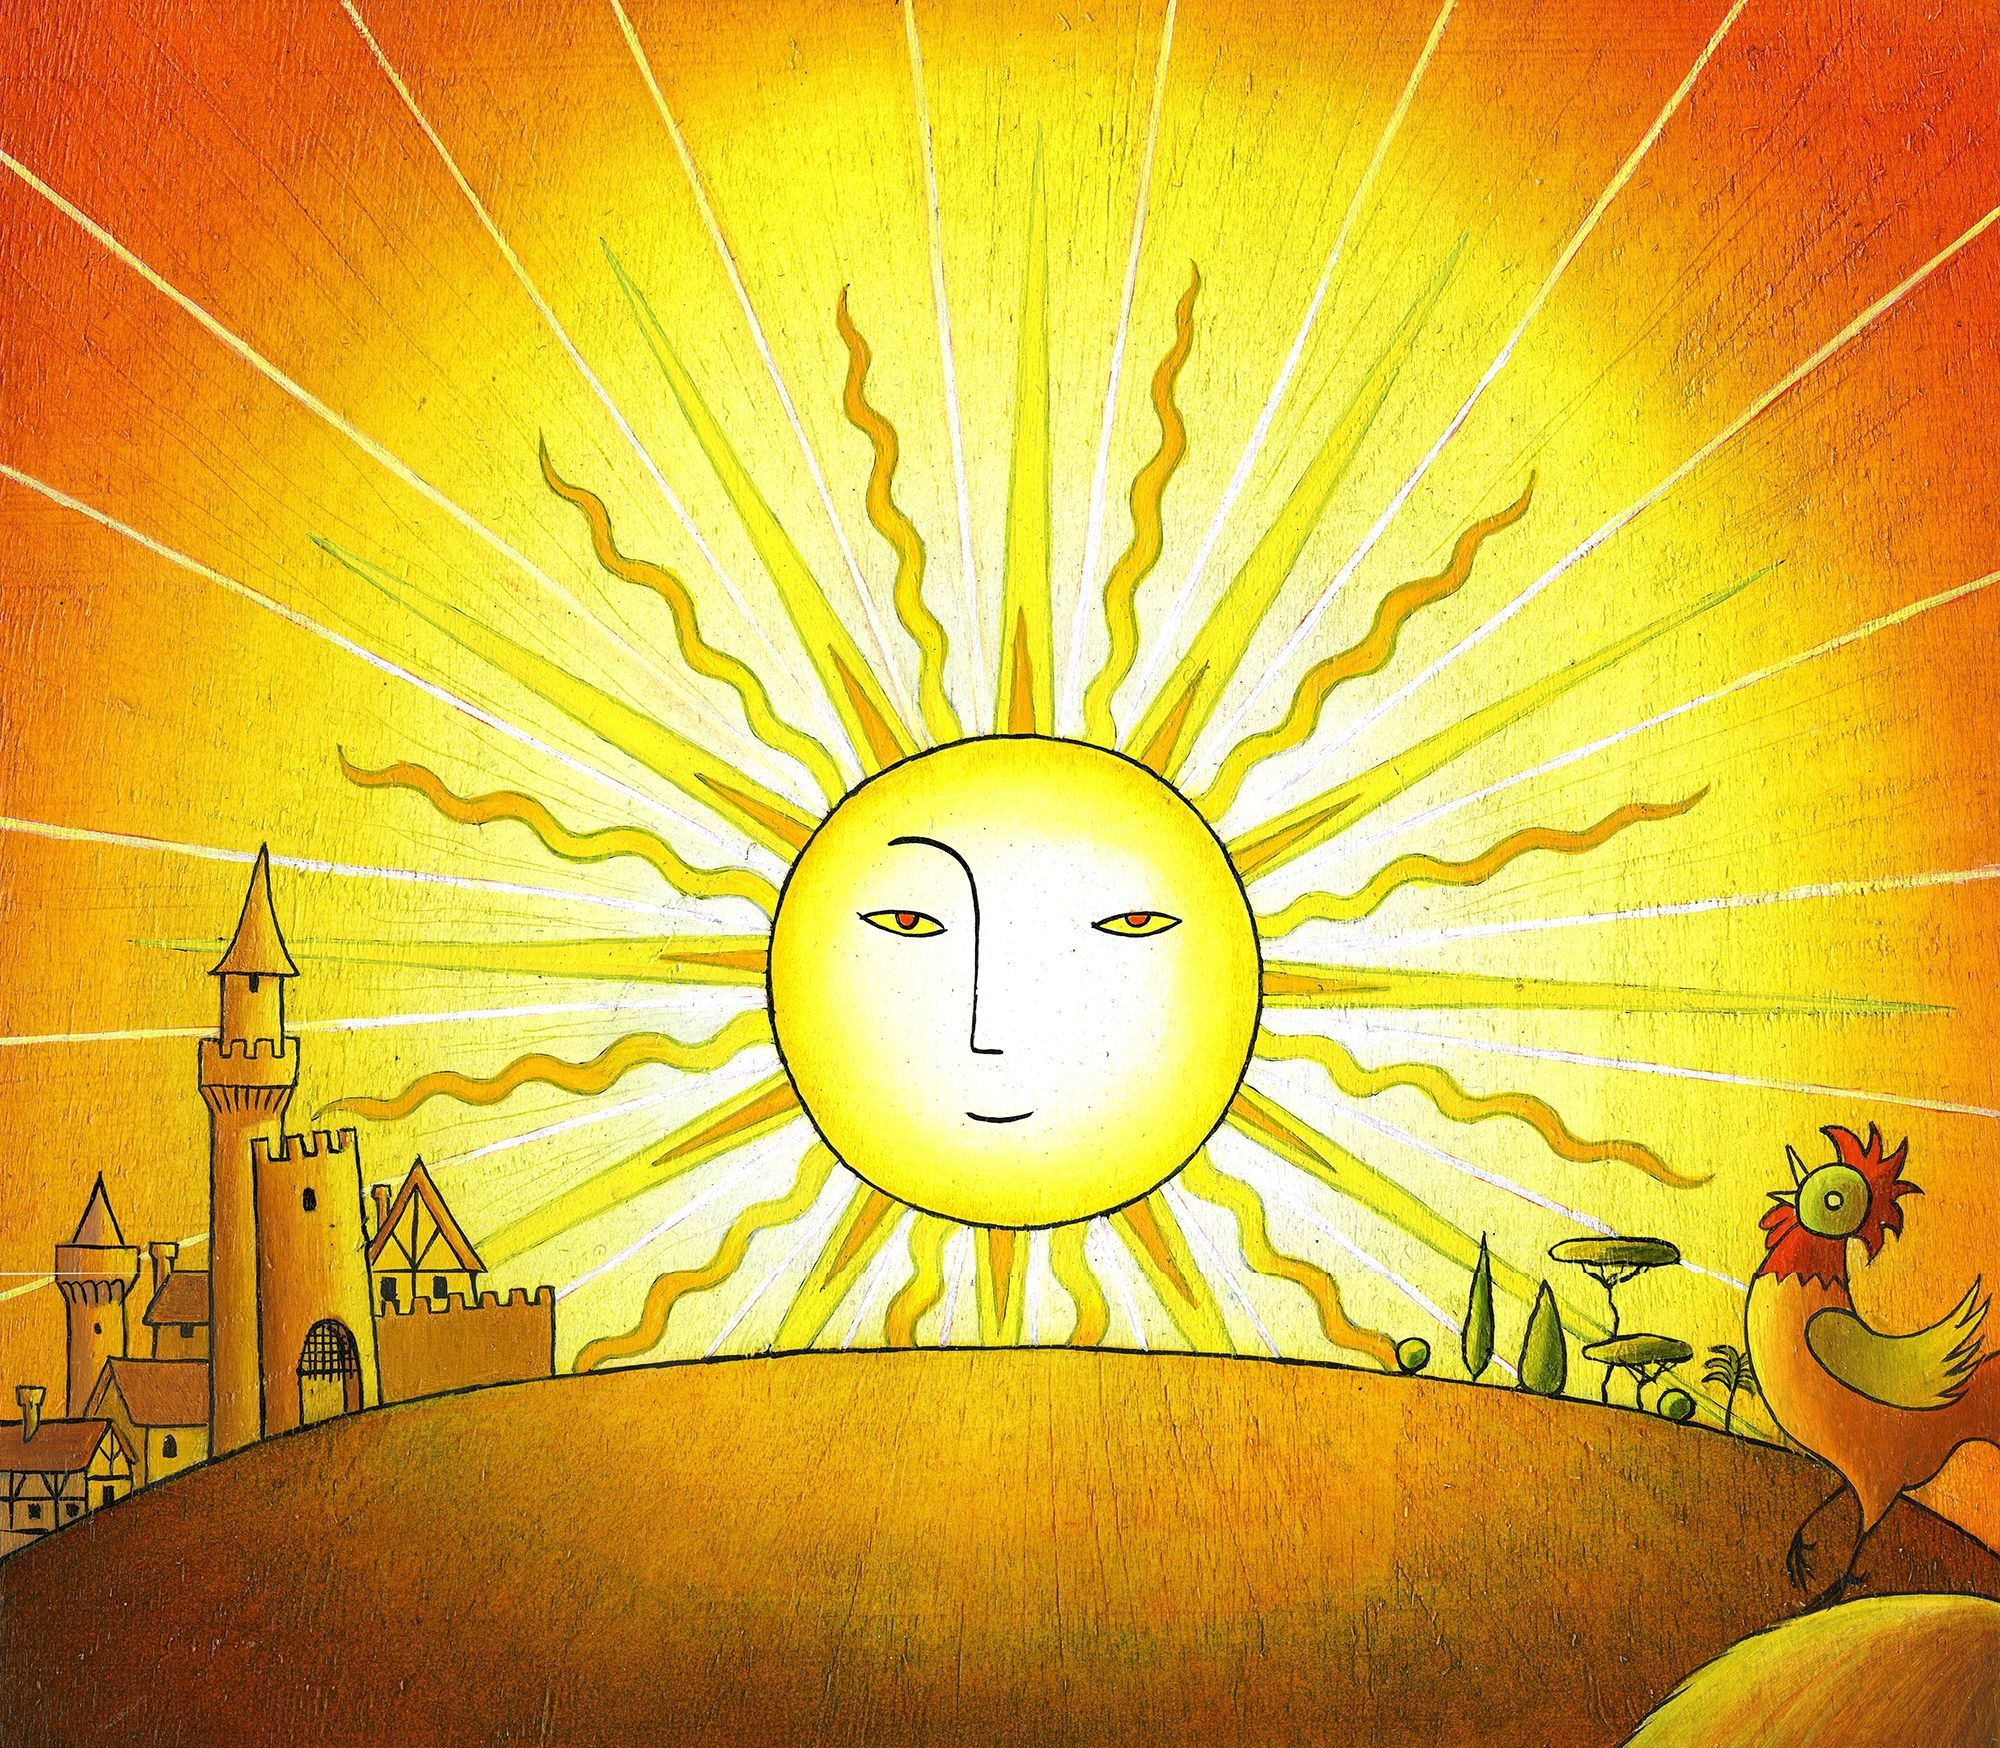 Имя шепнешь и солнце улыбнется. Солнце иллюстрация. Солнце рисунок. Солнце нарисованное. Солнышко рисунок.